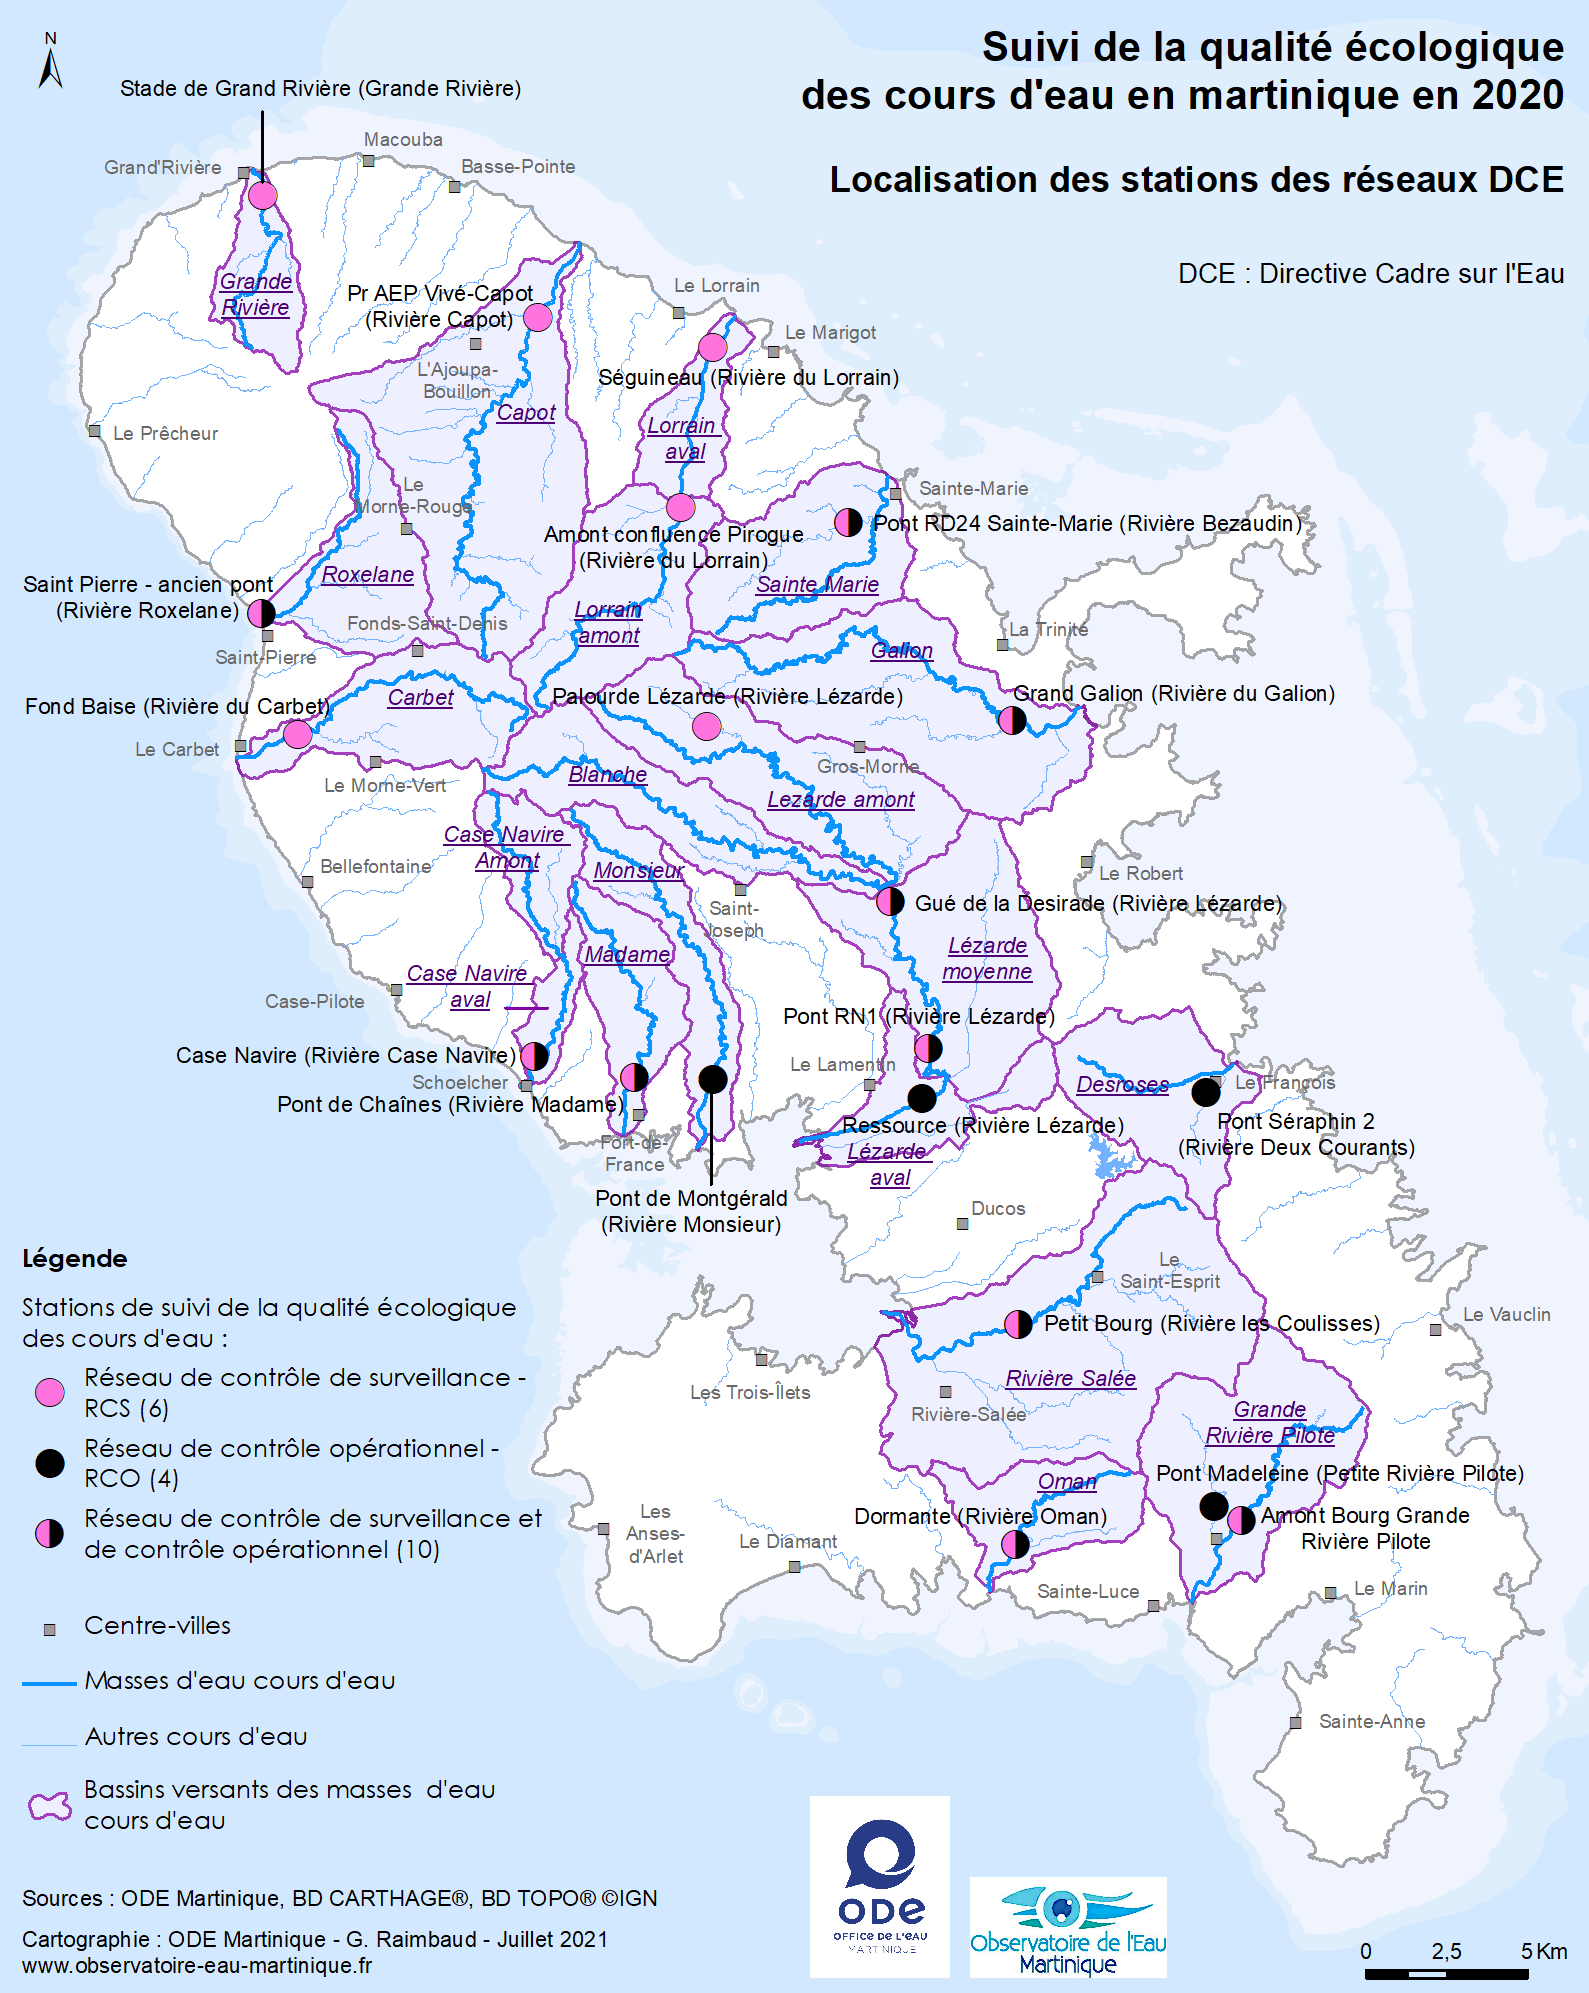 Suivi de la qualité écologique des cours d'eau en Martinique en 2020 - Localisation des stations